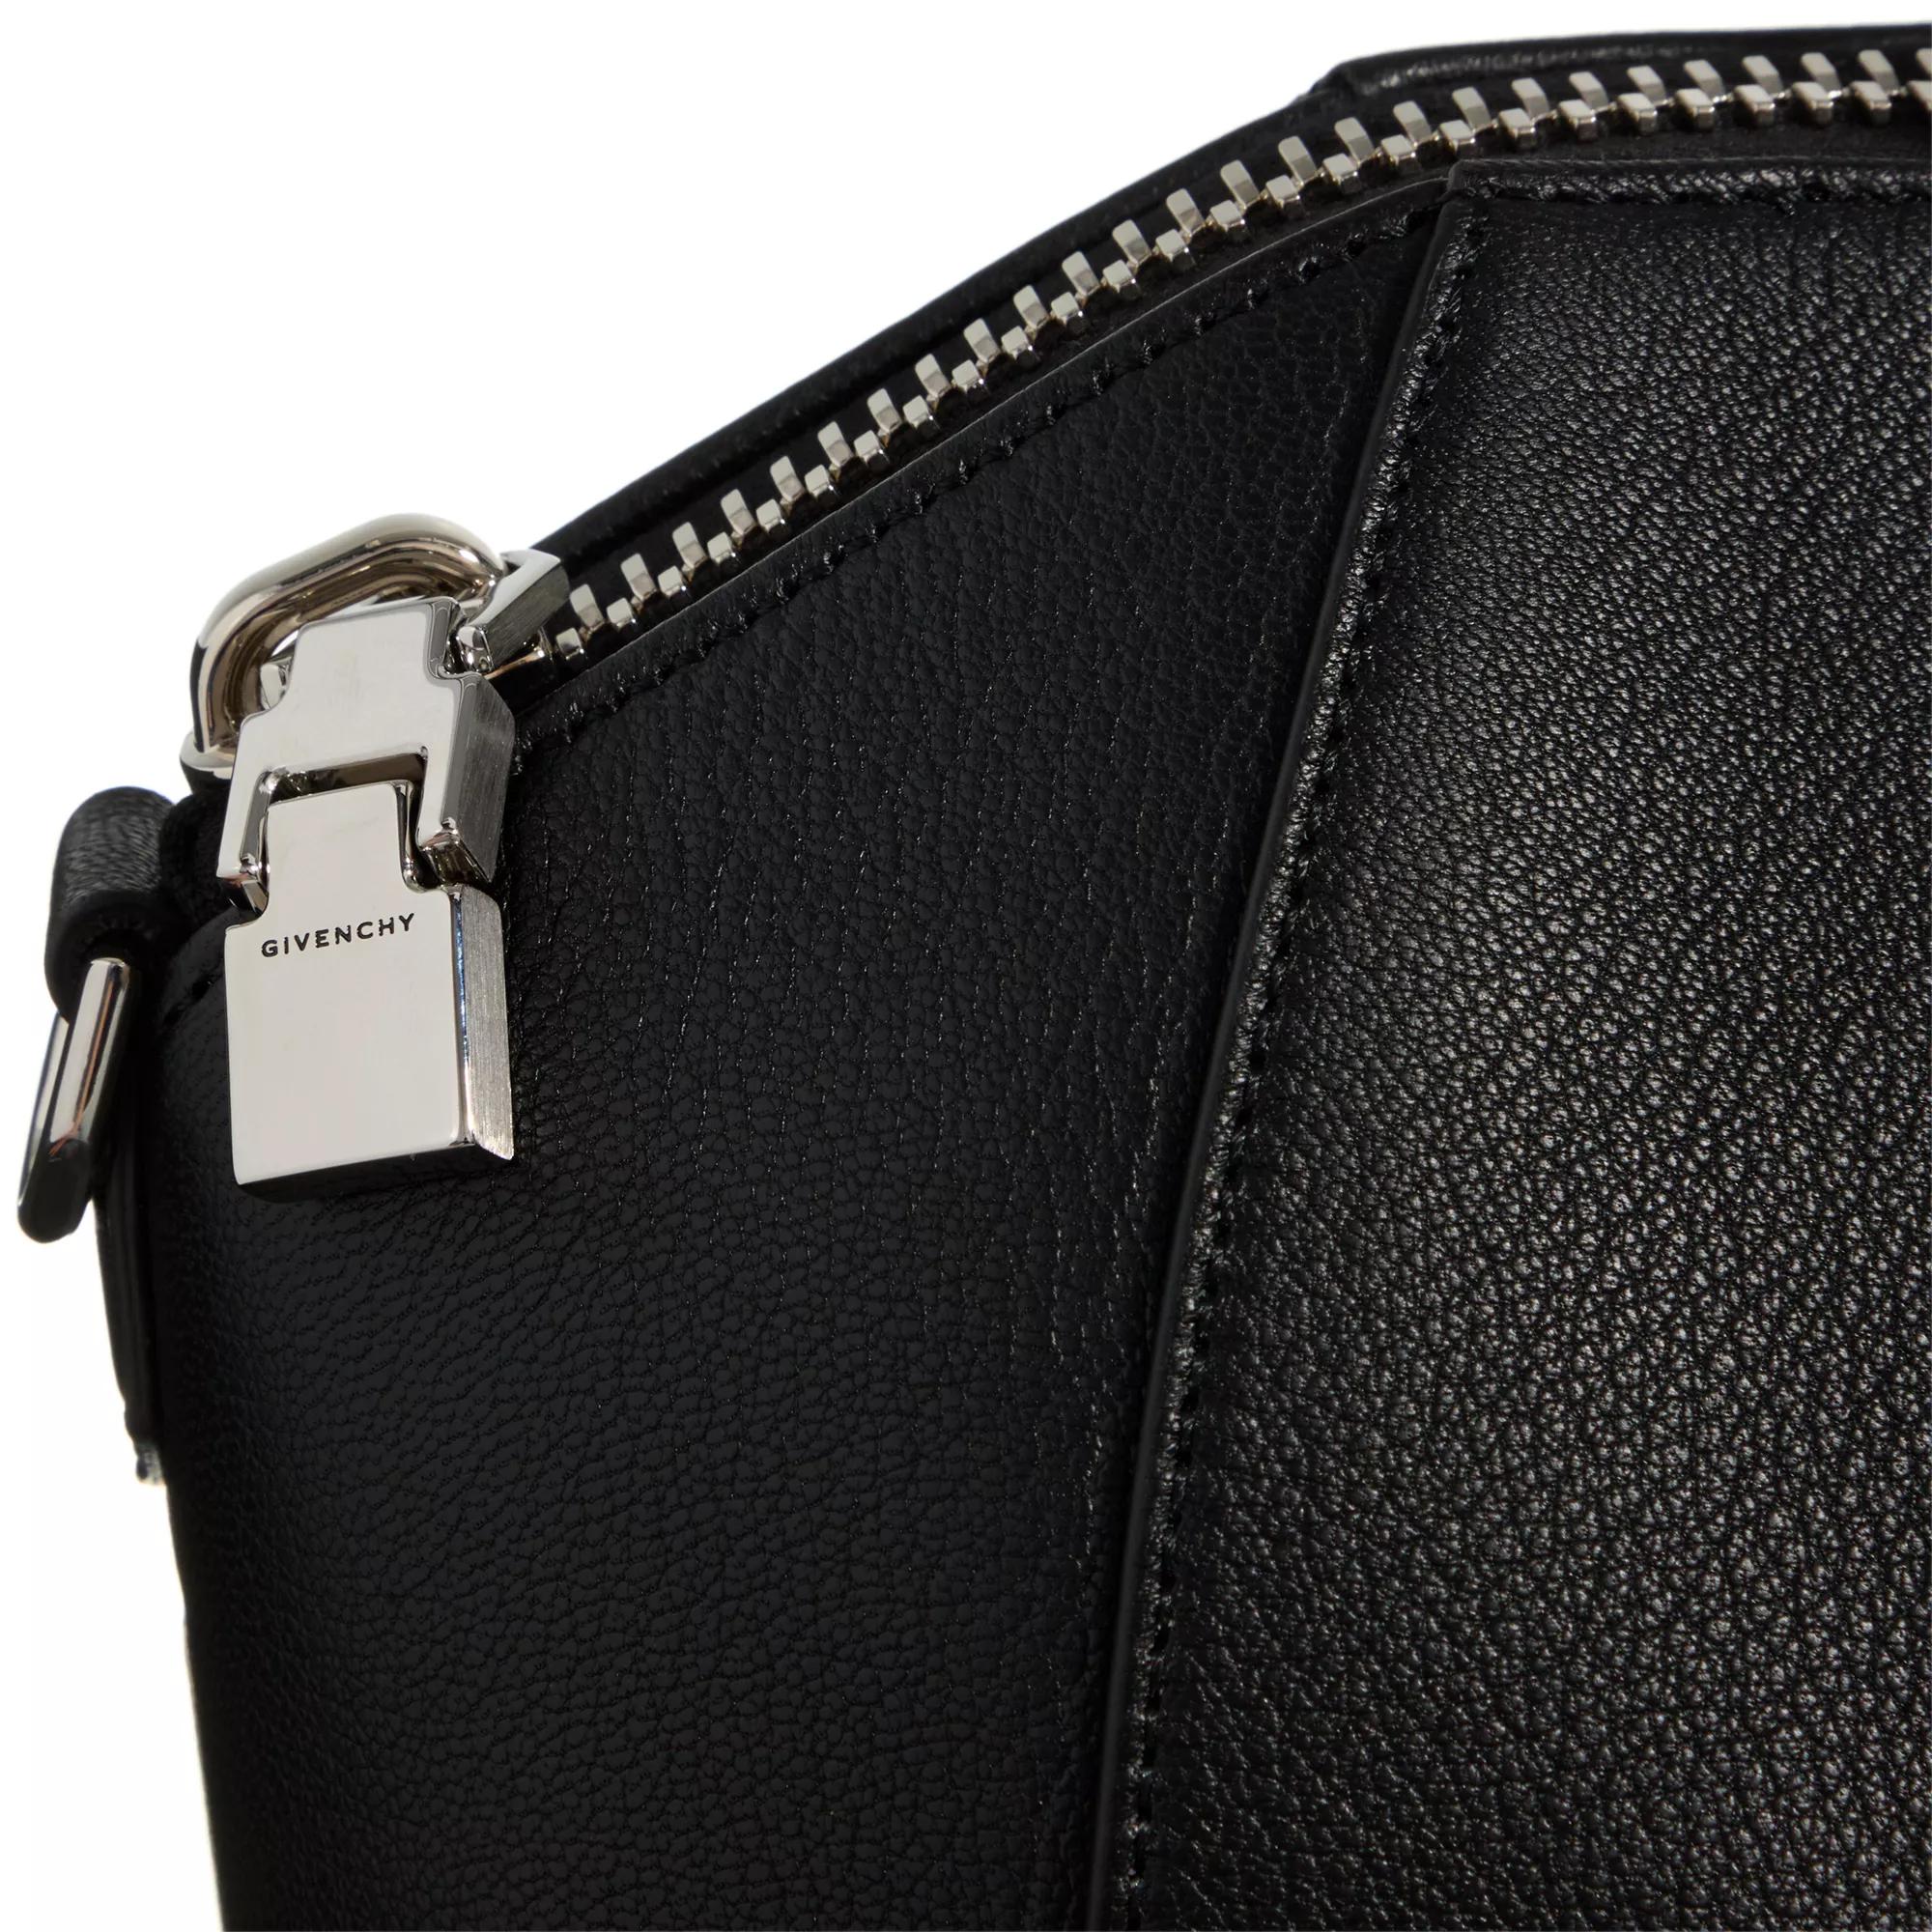 Givenchy Totes Antigona Medium Bag in zwart